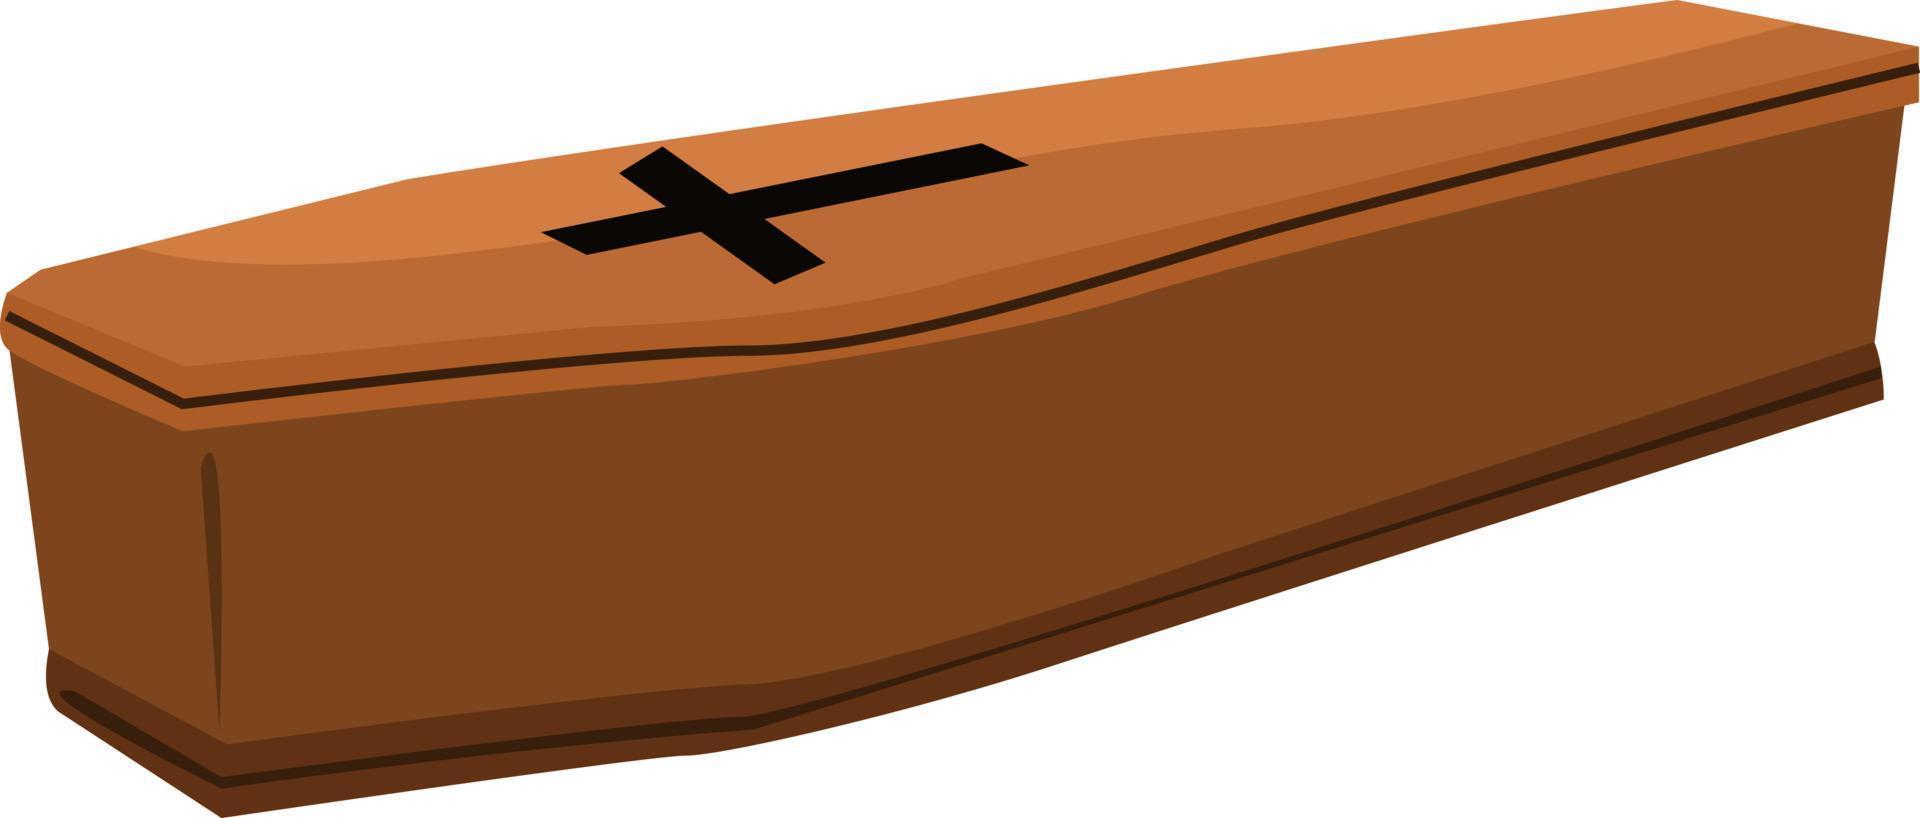 Cercueil en bois, illustration, vecteur sur fond blanc